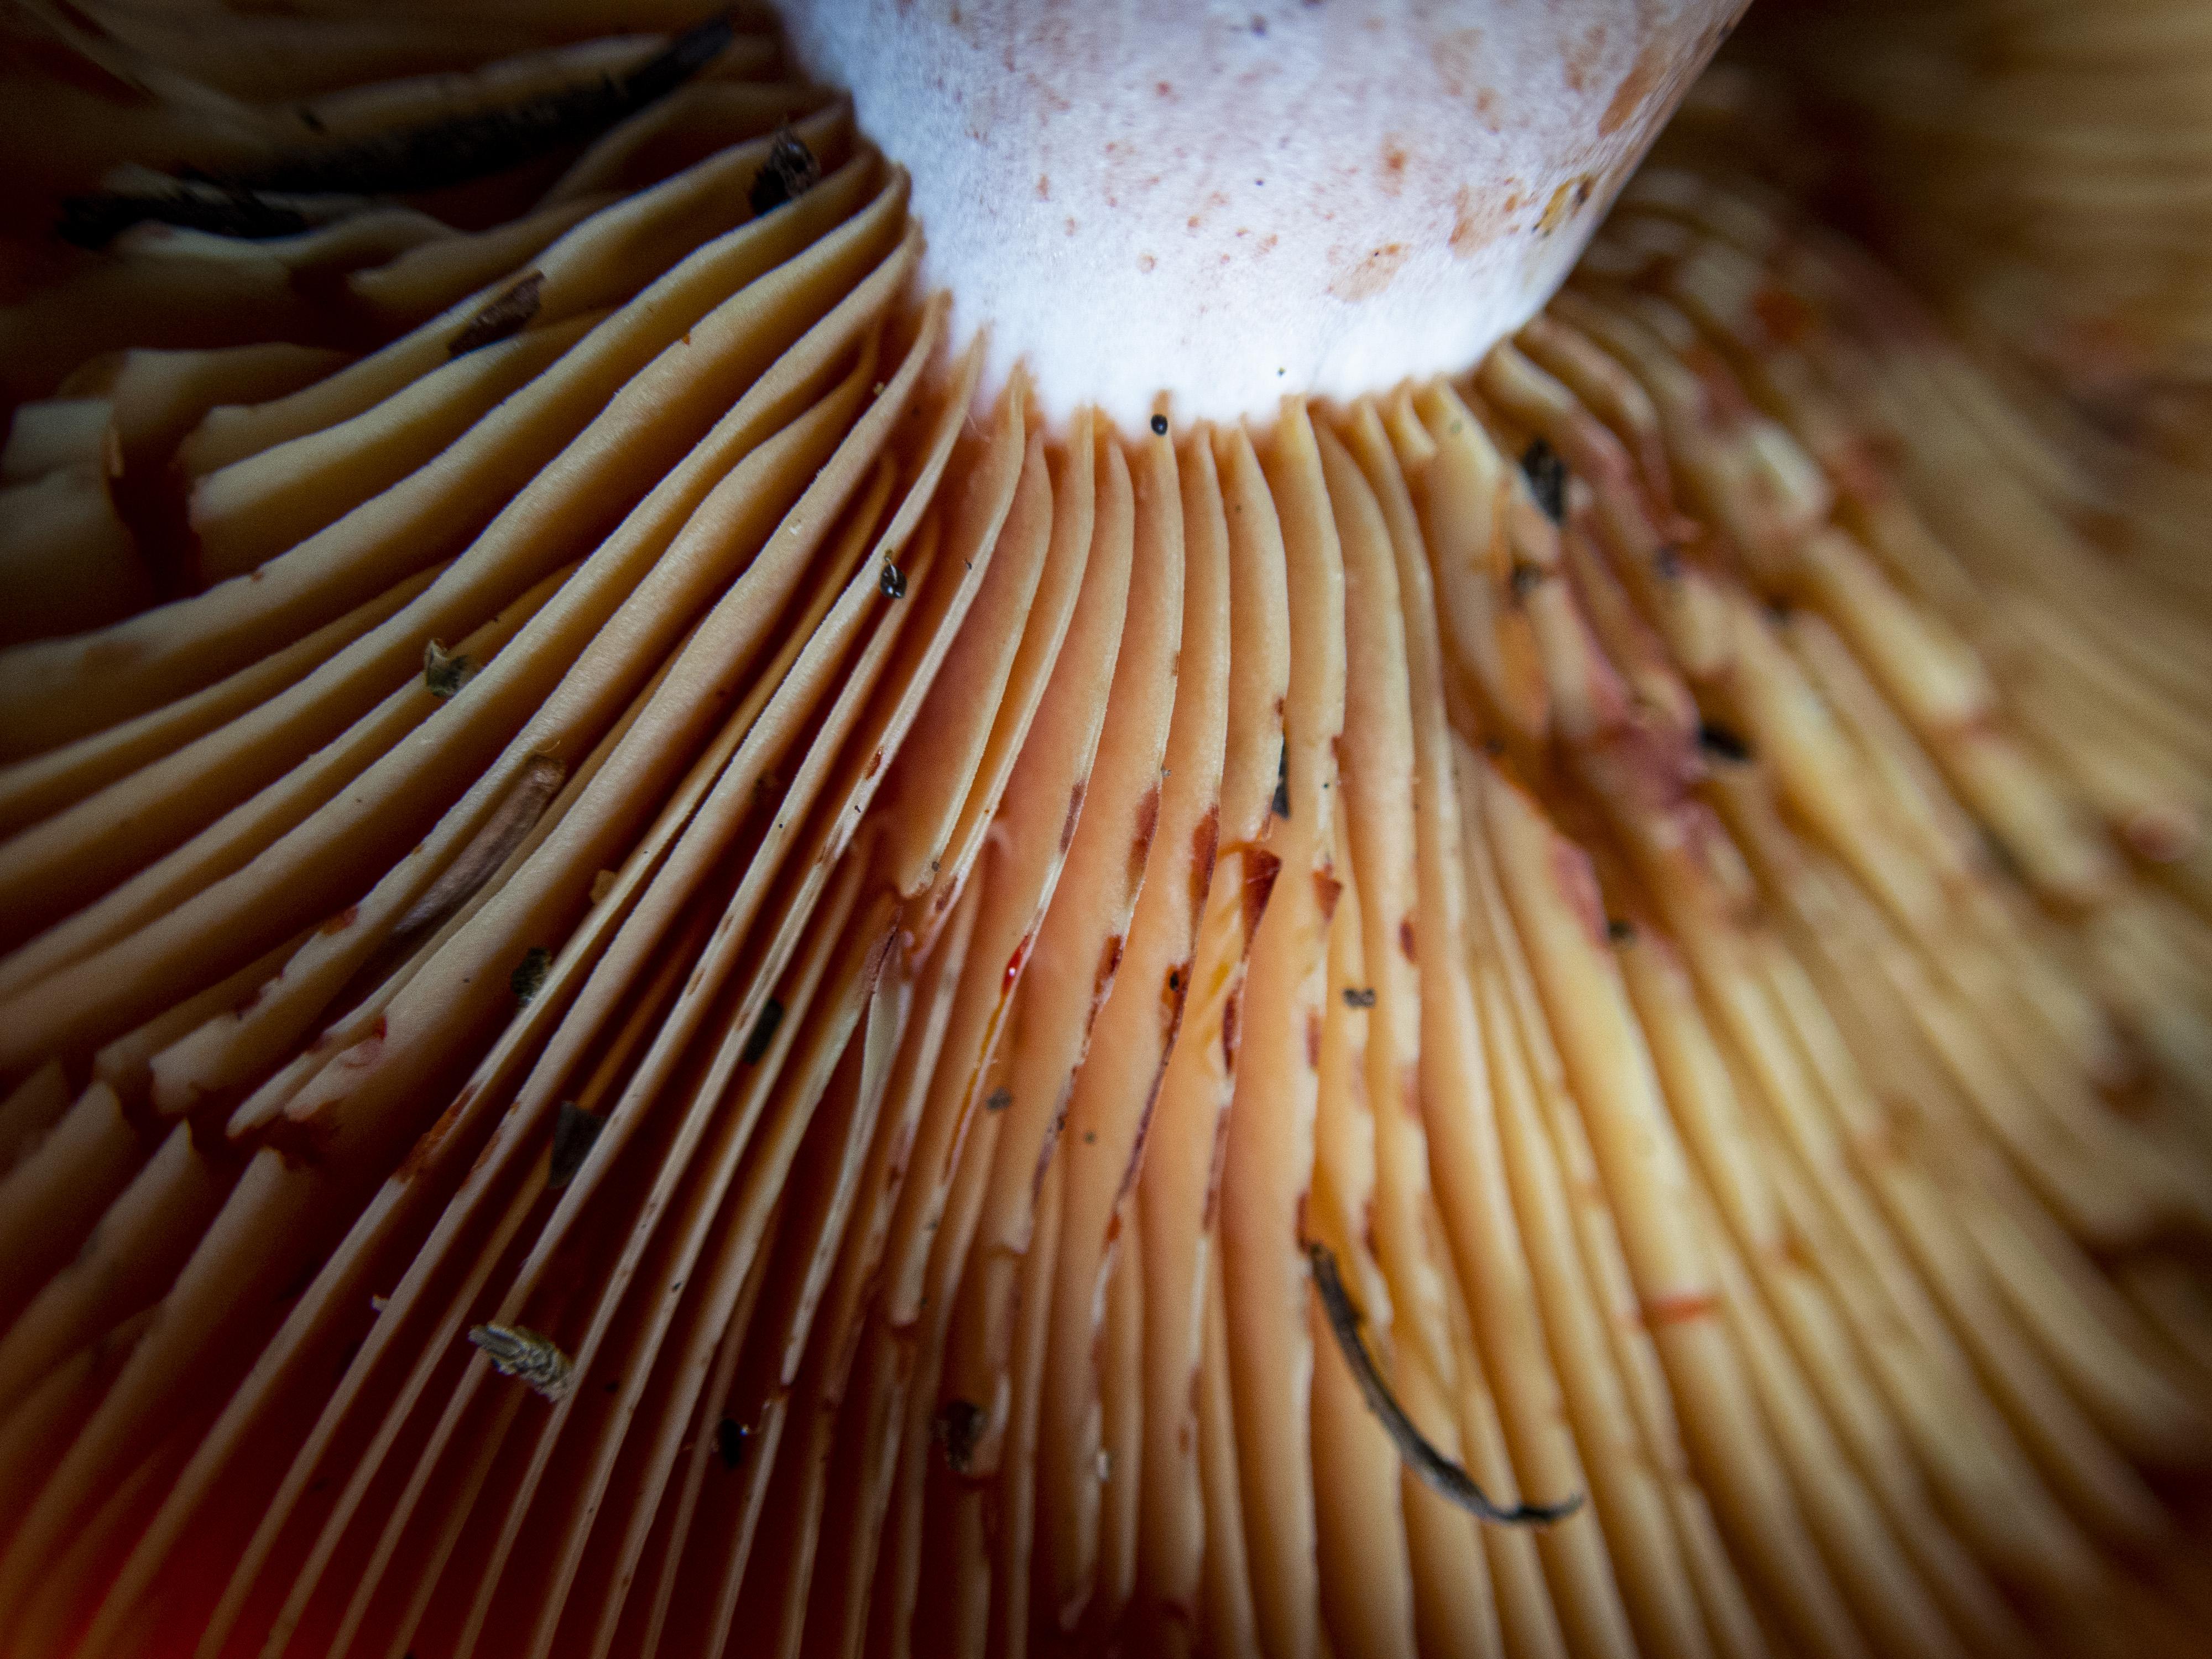 Detall de la pinta d'un rovelló collit als boscos del Berguedà. FOTO: Anna E. Puig